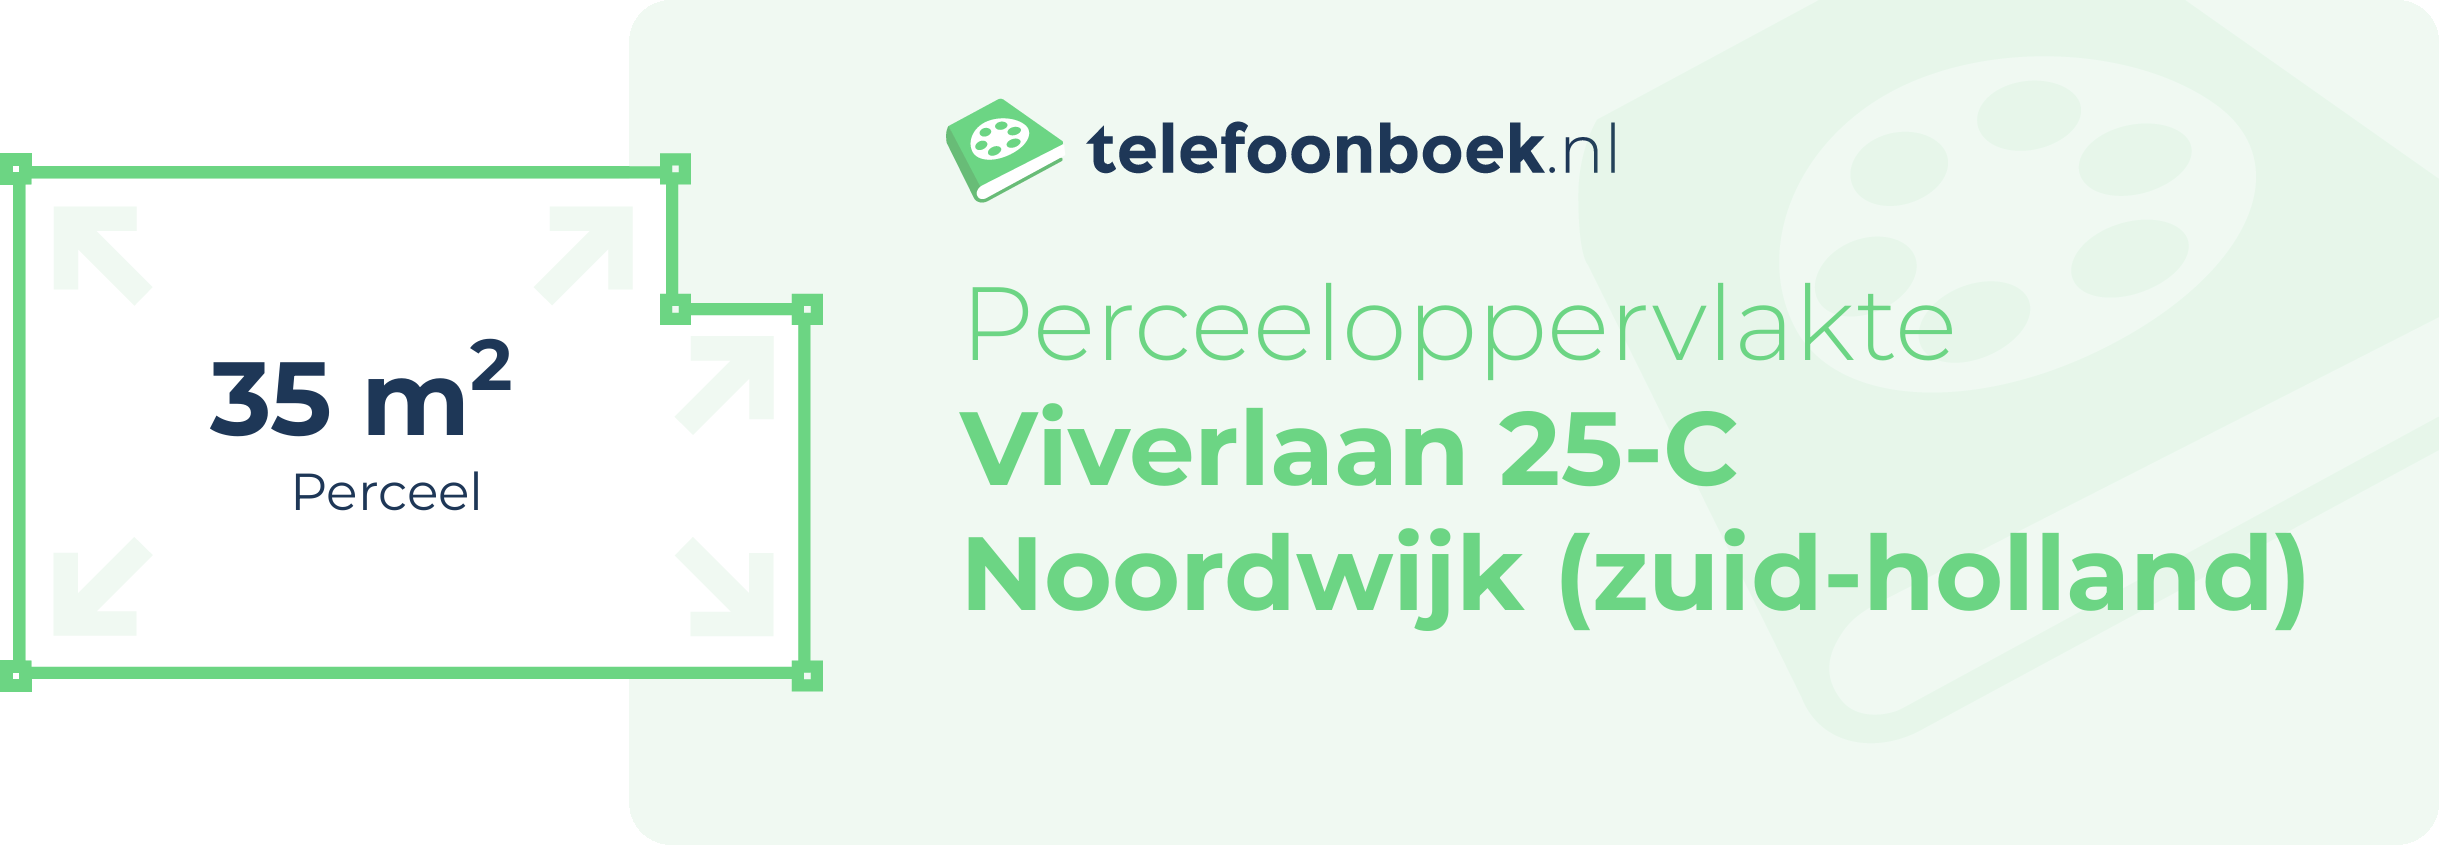 Perceeloppervlakte Viverlaan 25-C Noordwijk (Zuid-Holland)